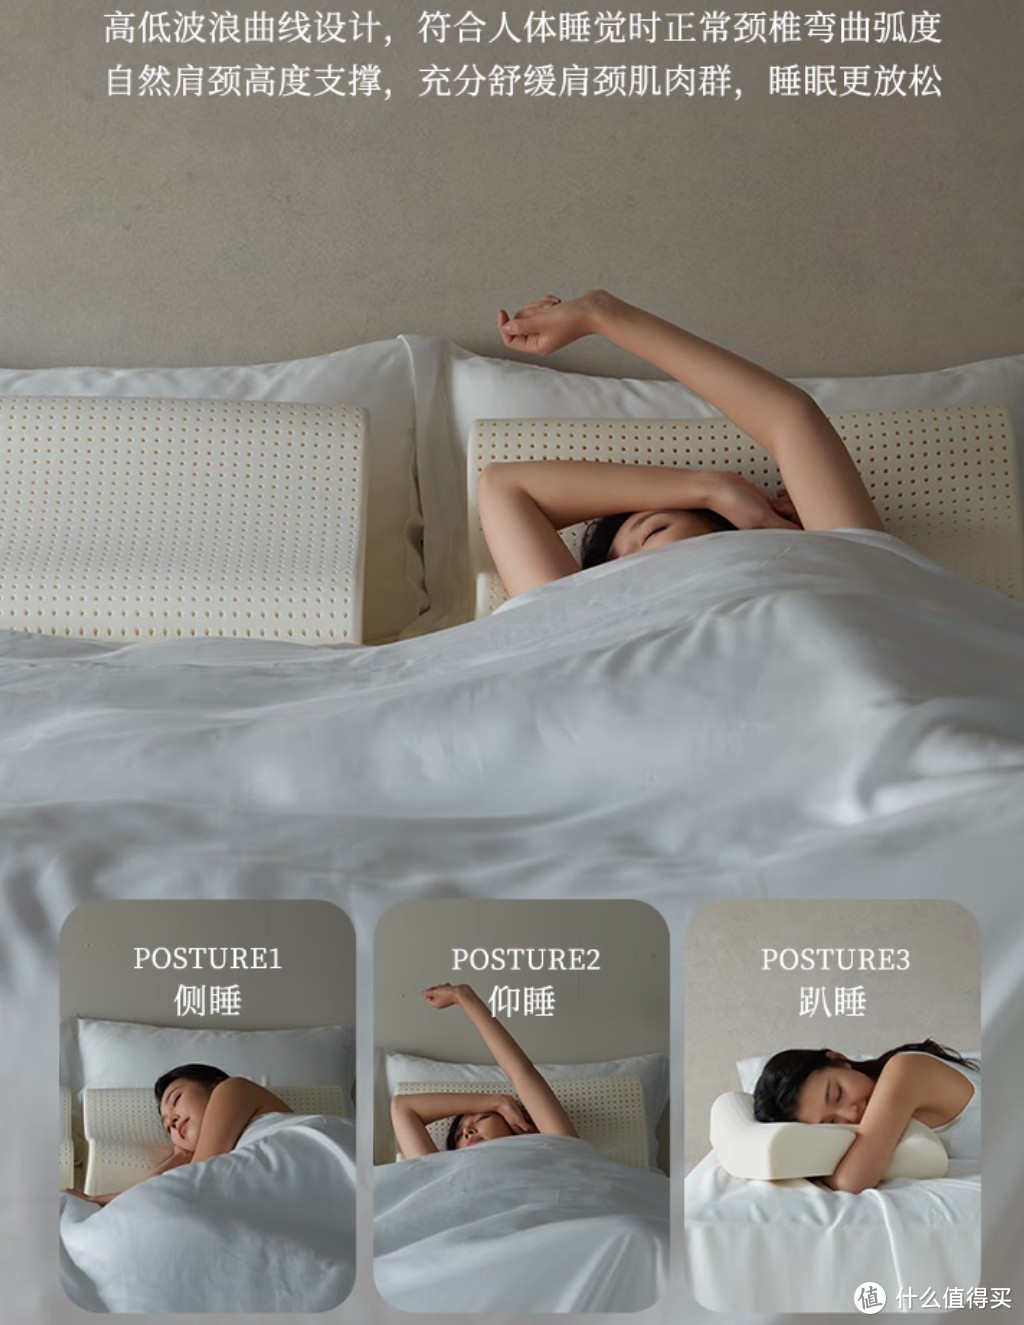 提升睡眠质量，从选择合适的枕头开始